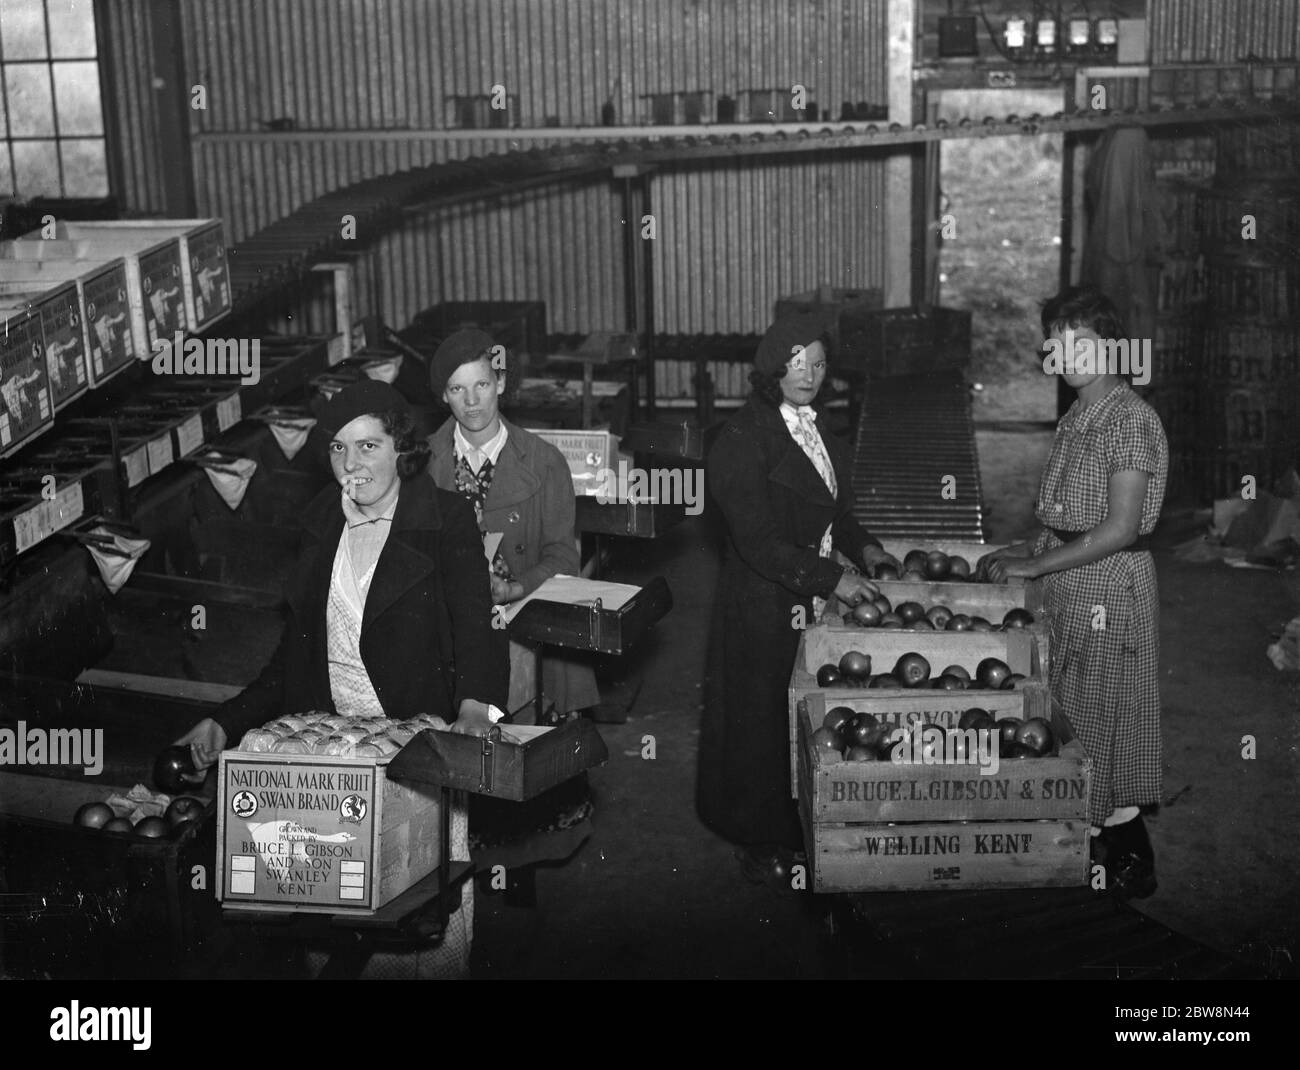 Les femmes emballeurs de fruits emballant des pommes à Bruce L Gibson et fils , Welling , Kent . 1937 Banque D'Images